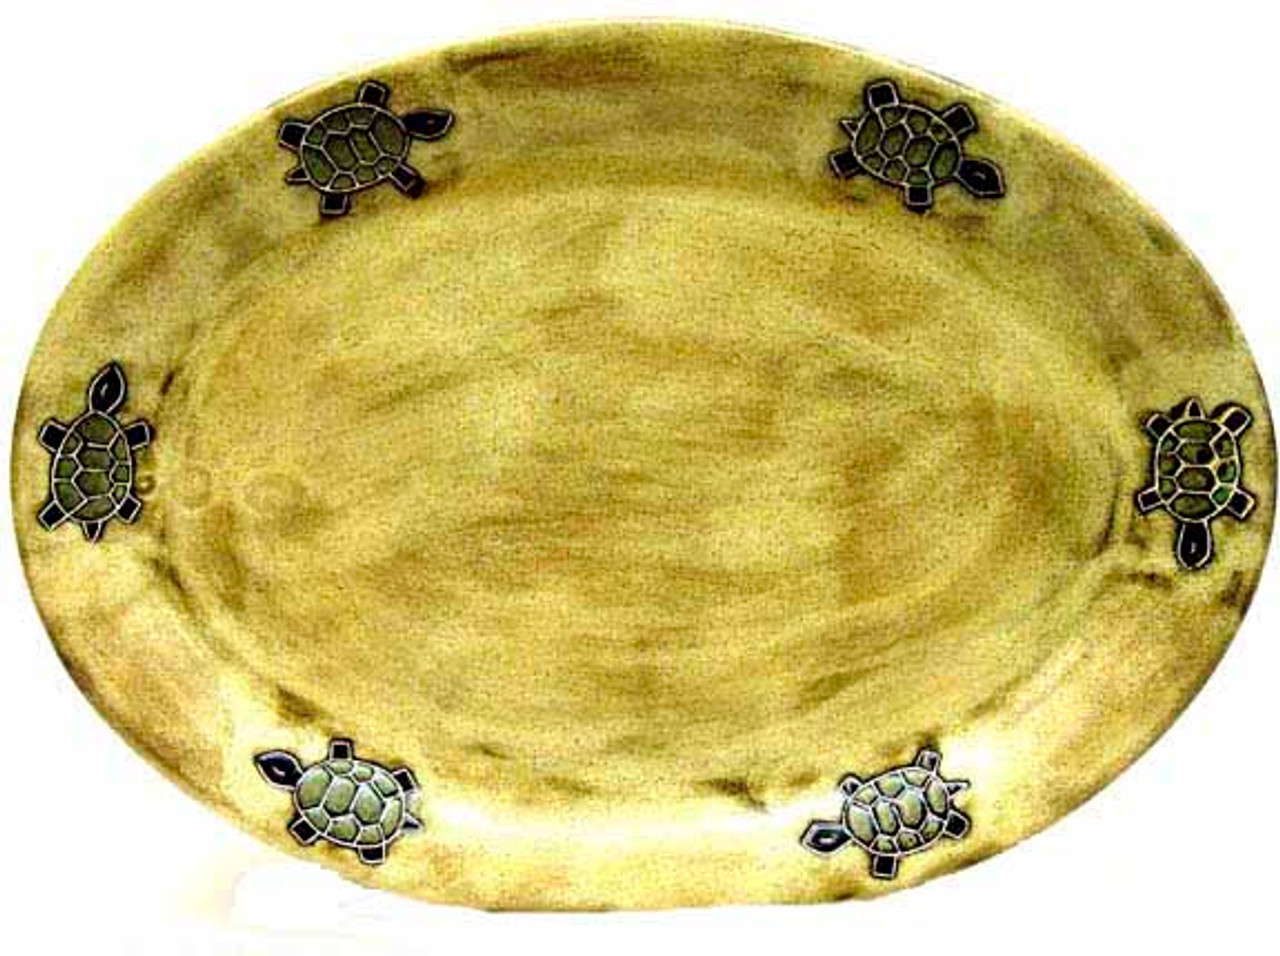 Mara Oval Serving Platter 13" - Desert Turtle